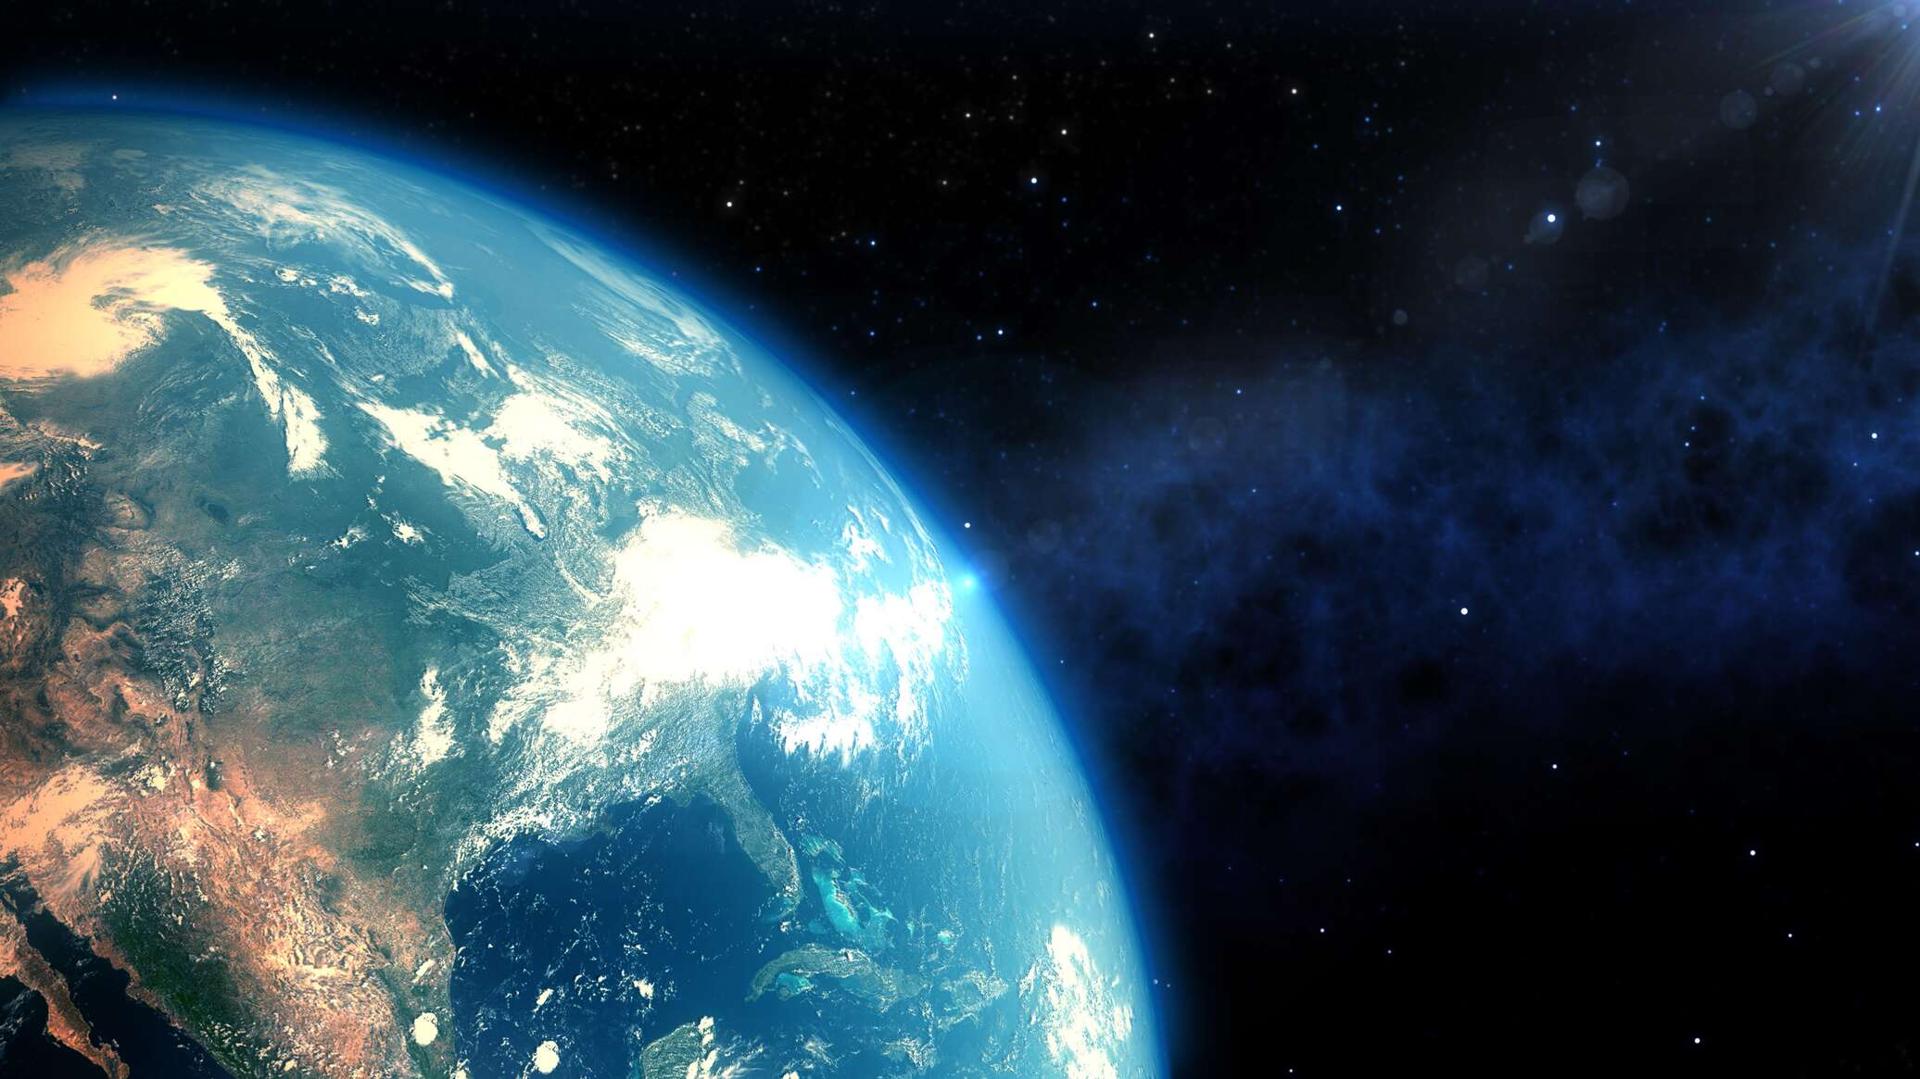 اكتشاف كوكب قريب من حجم الأرض... وخطط للبحث فيه عن حياة